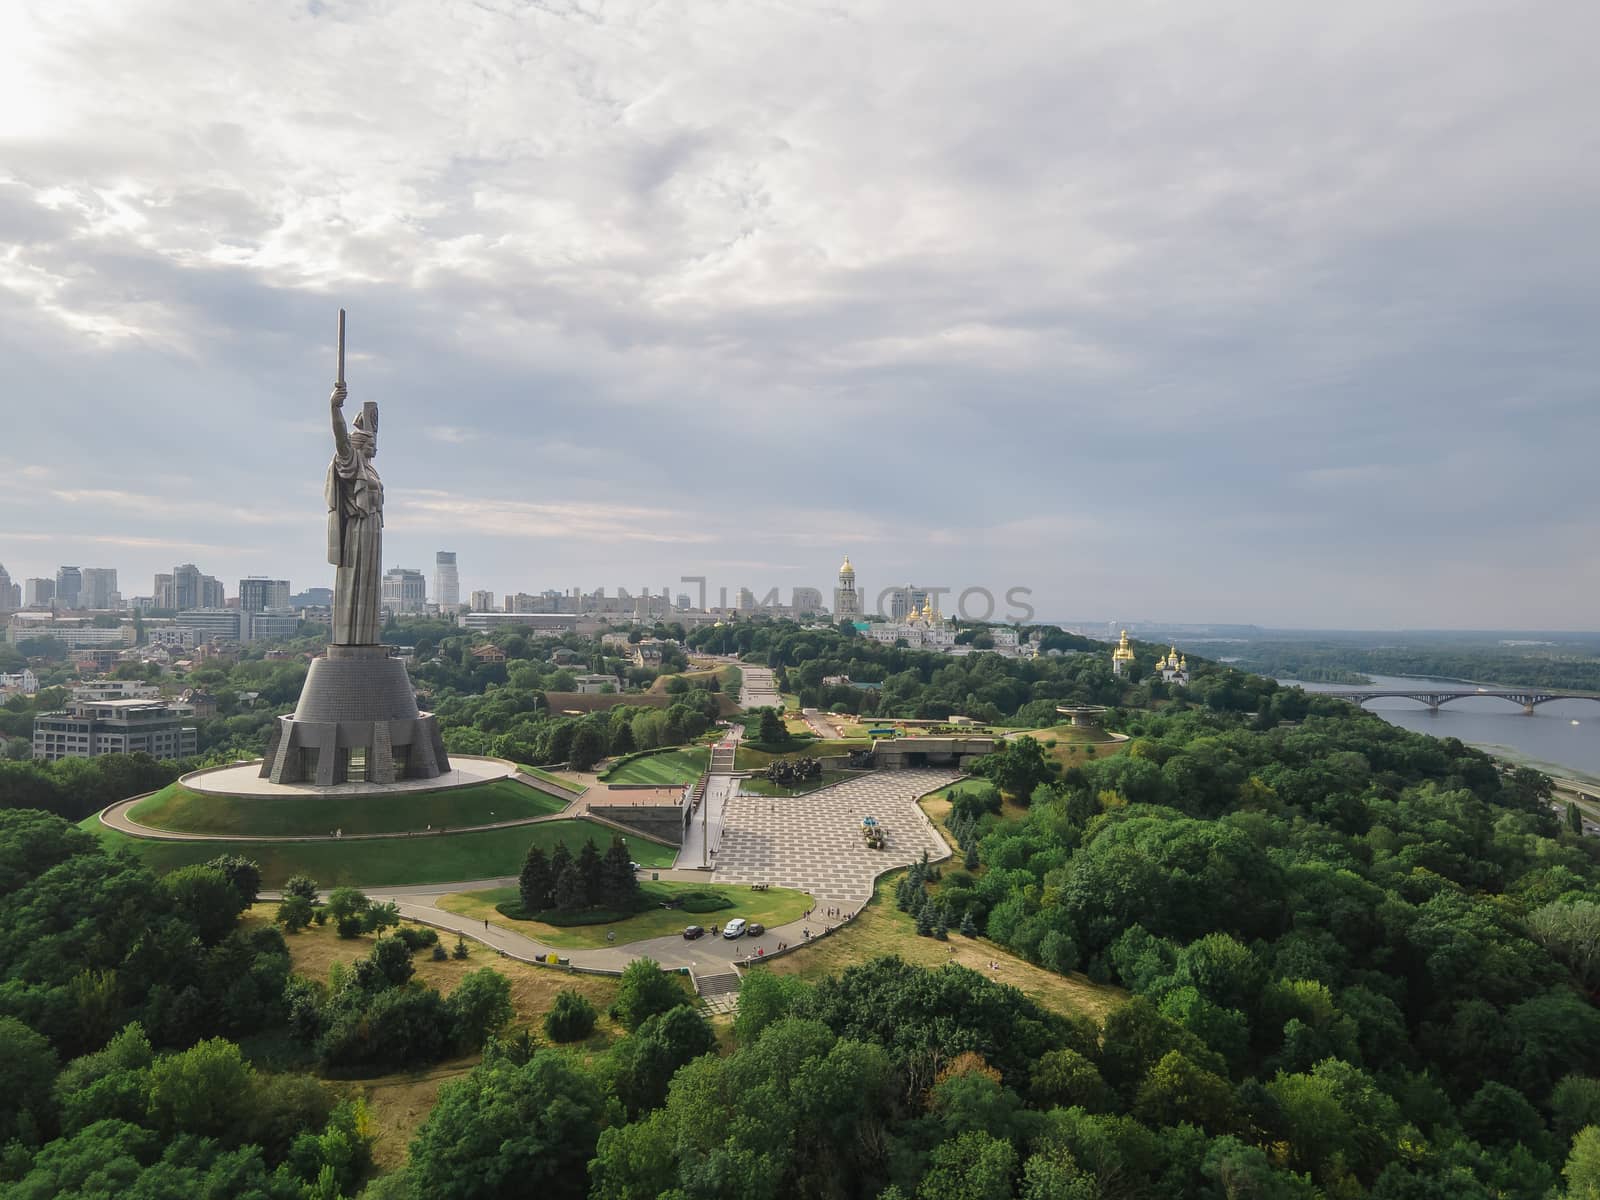 Historical monument of Ukraine : Motherland Monument in Kyiv by Mykola_Kondrashev